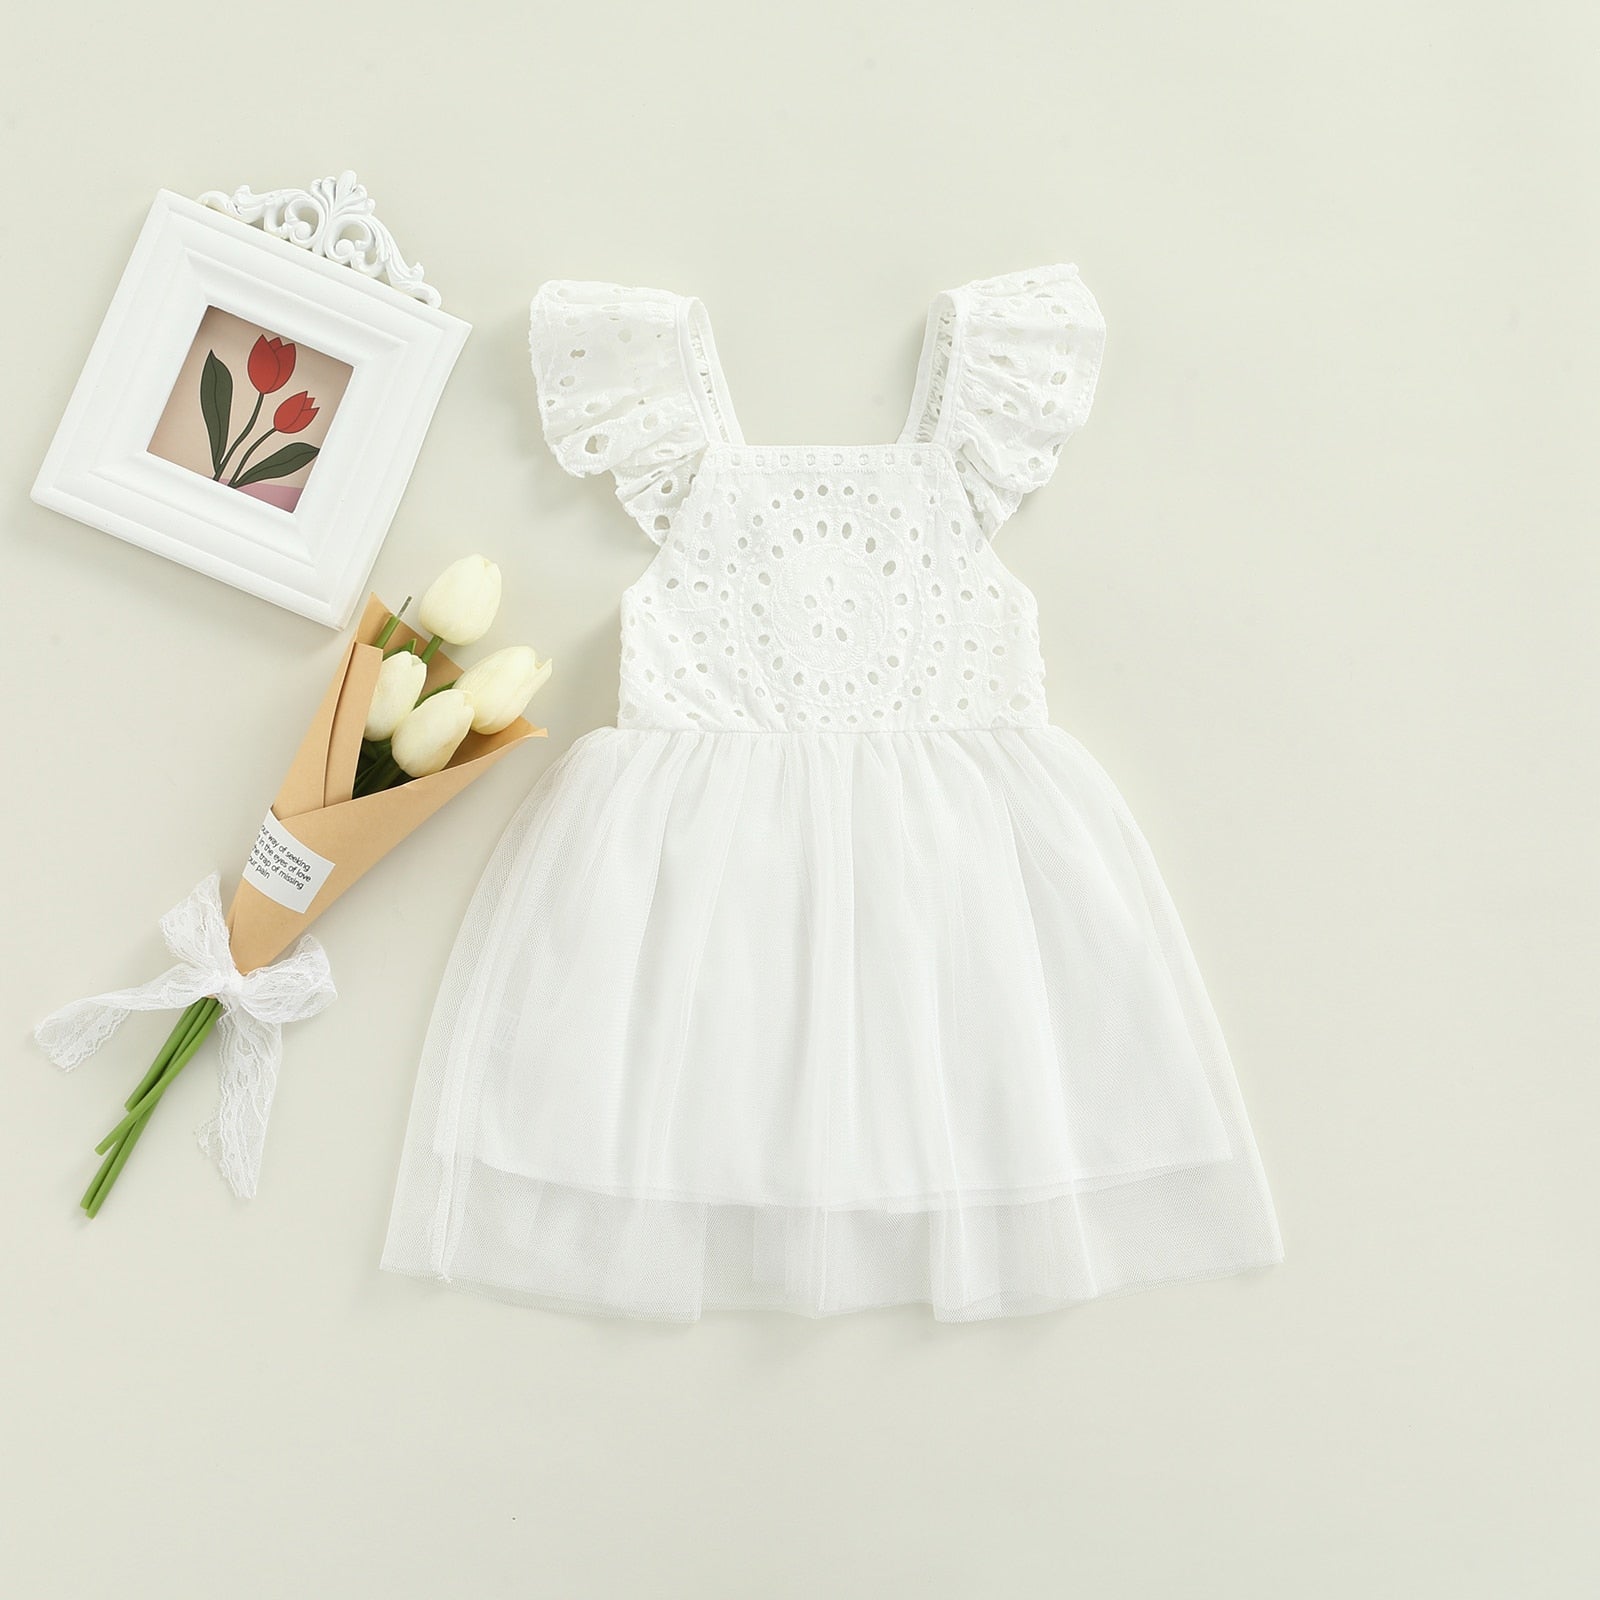 Vestido Infantil Lese vestido Loja Click Certo Branco Tule 2-3 anos 54cm 